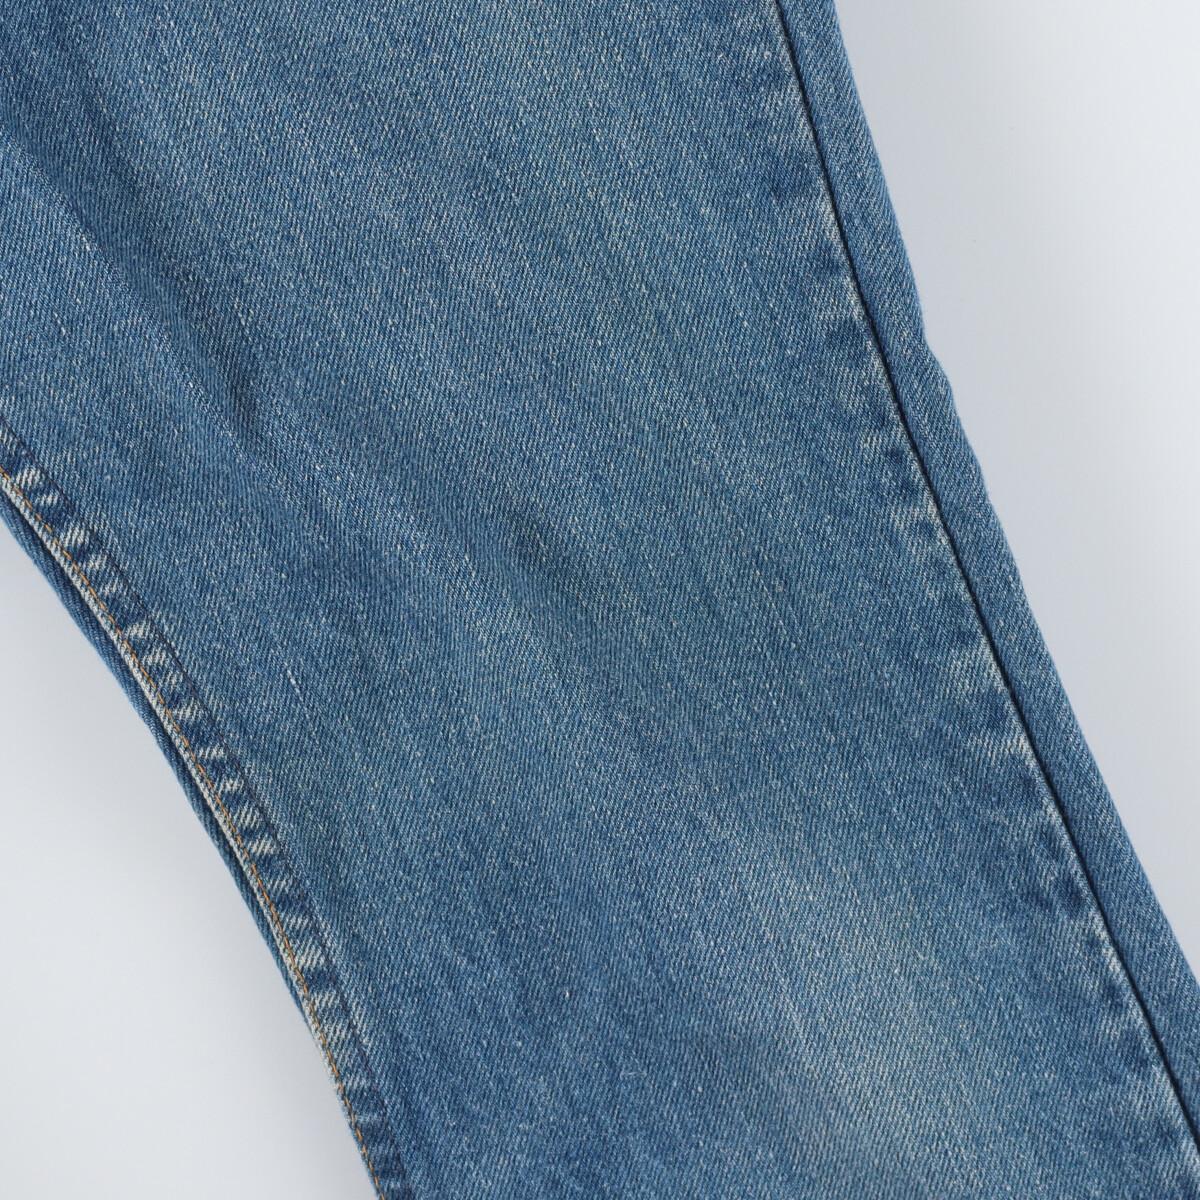  old clothes Levi's Levi\'s 646-0217 boots cut jeans Denim pants Vintage /eaa323919